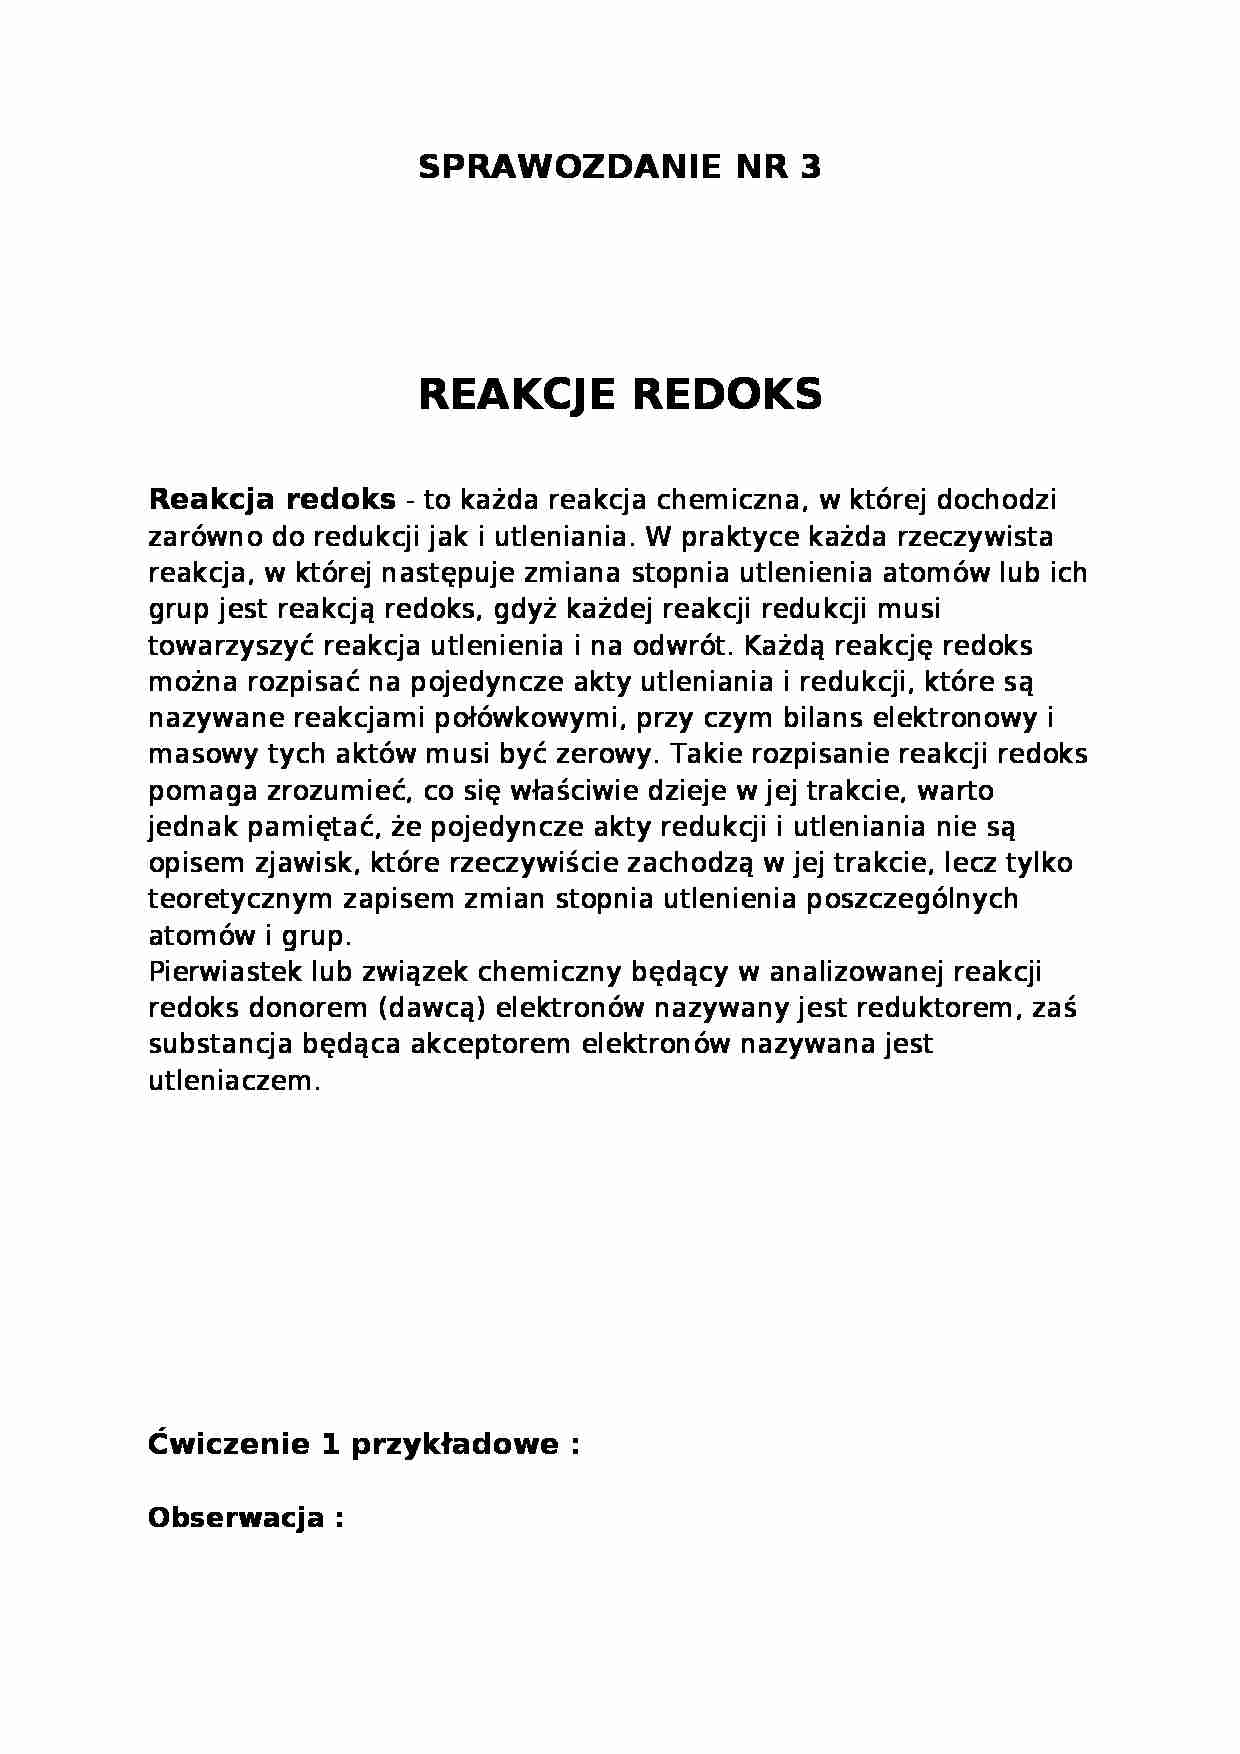 Sprawozdanie - reakcje redoks - strona 1